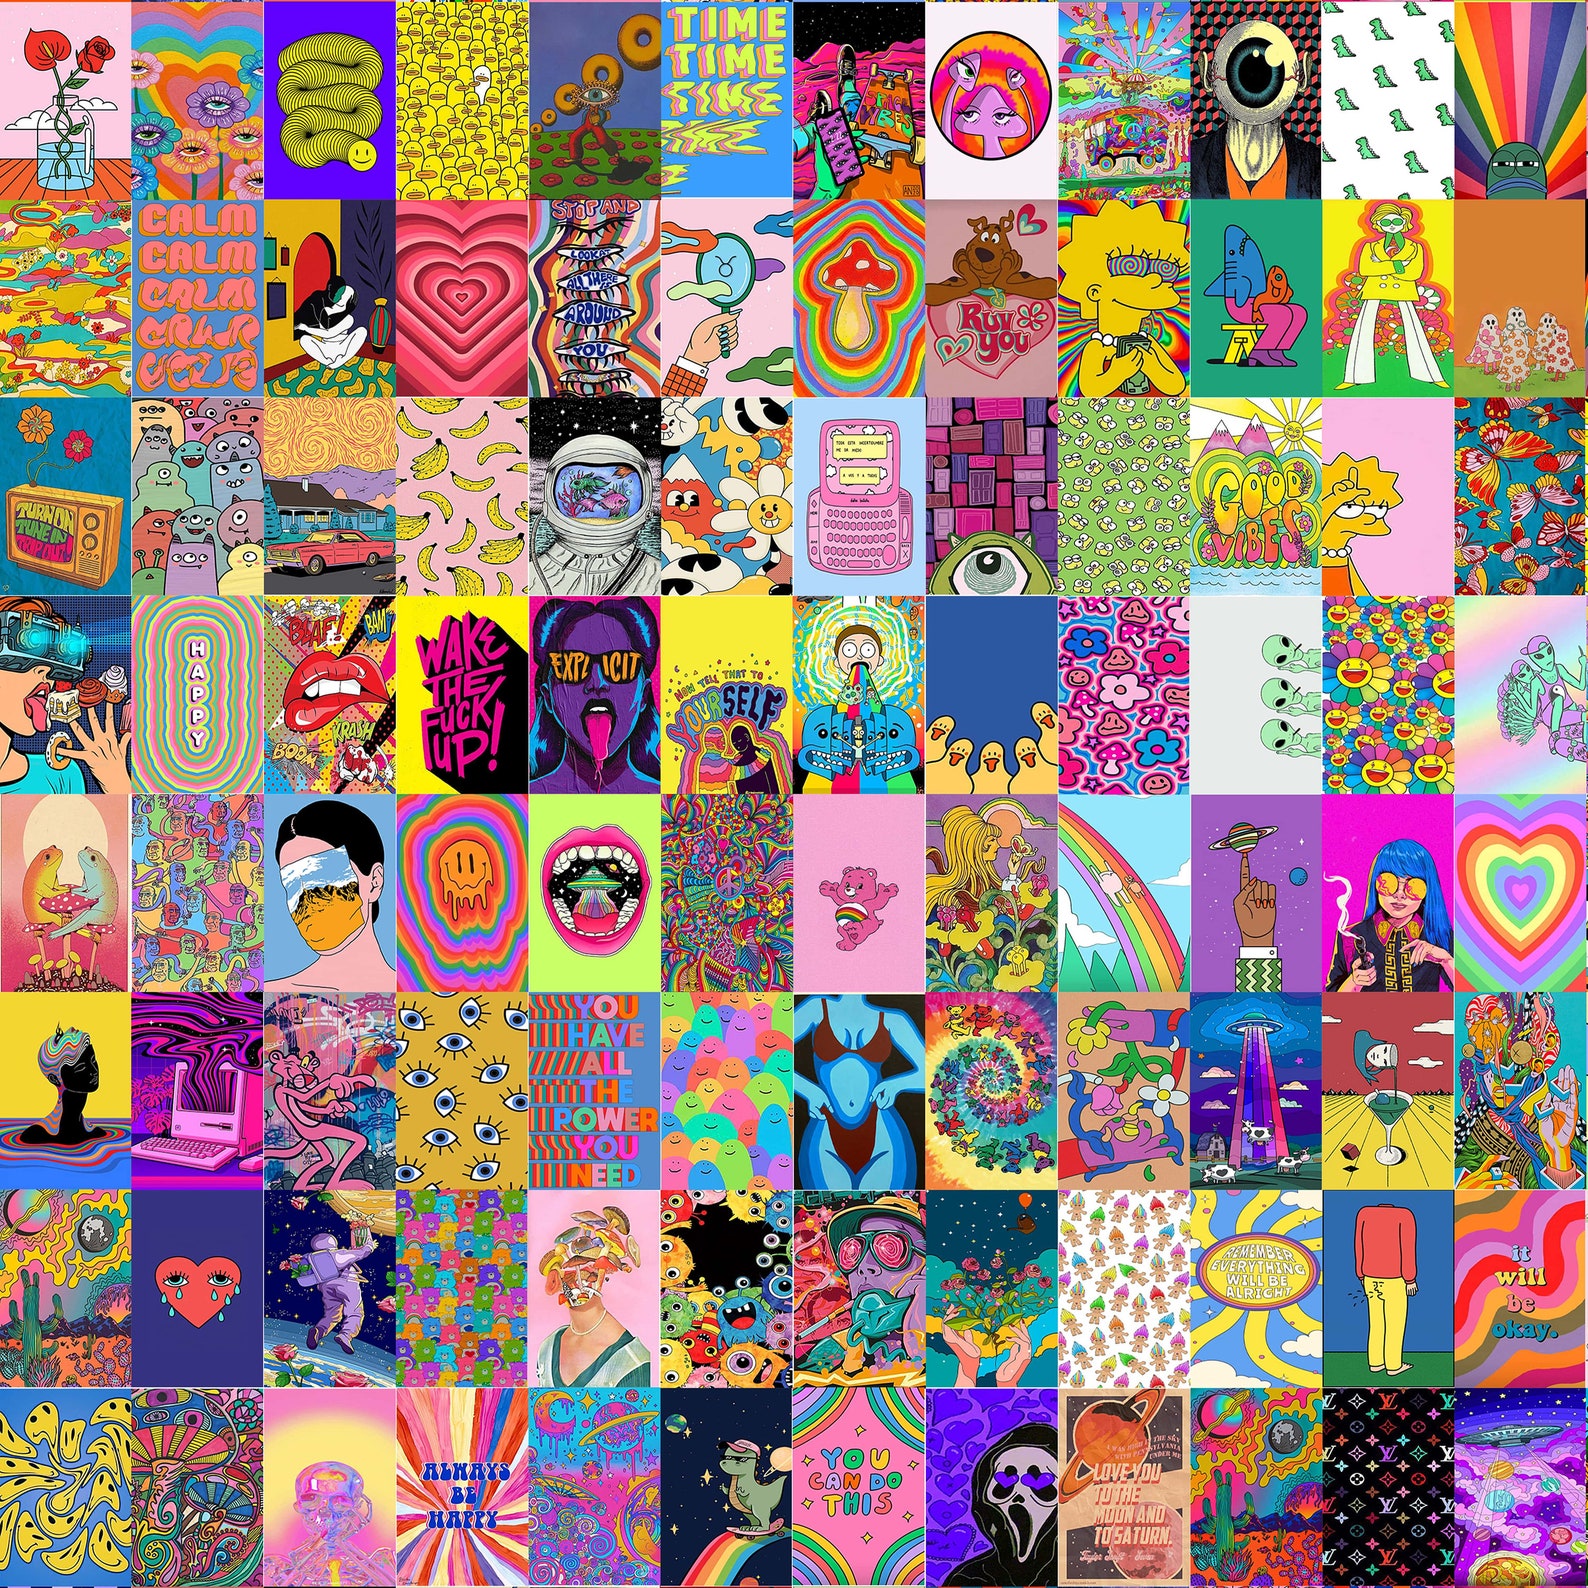 150 Indie Kid Digital Collage Kit Indie Wall Collage - Etsy